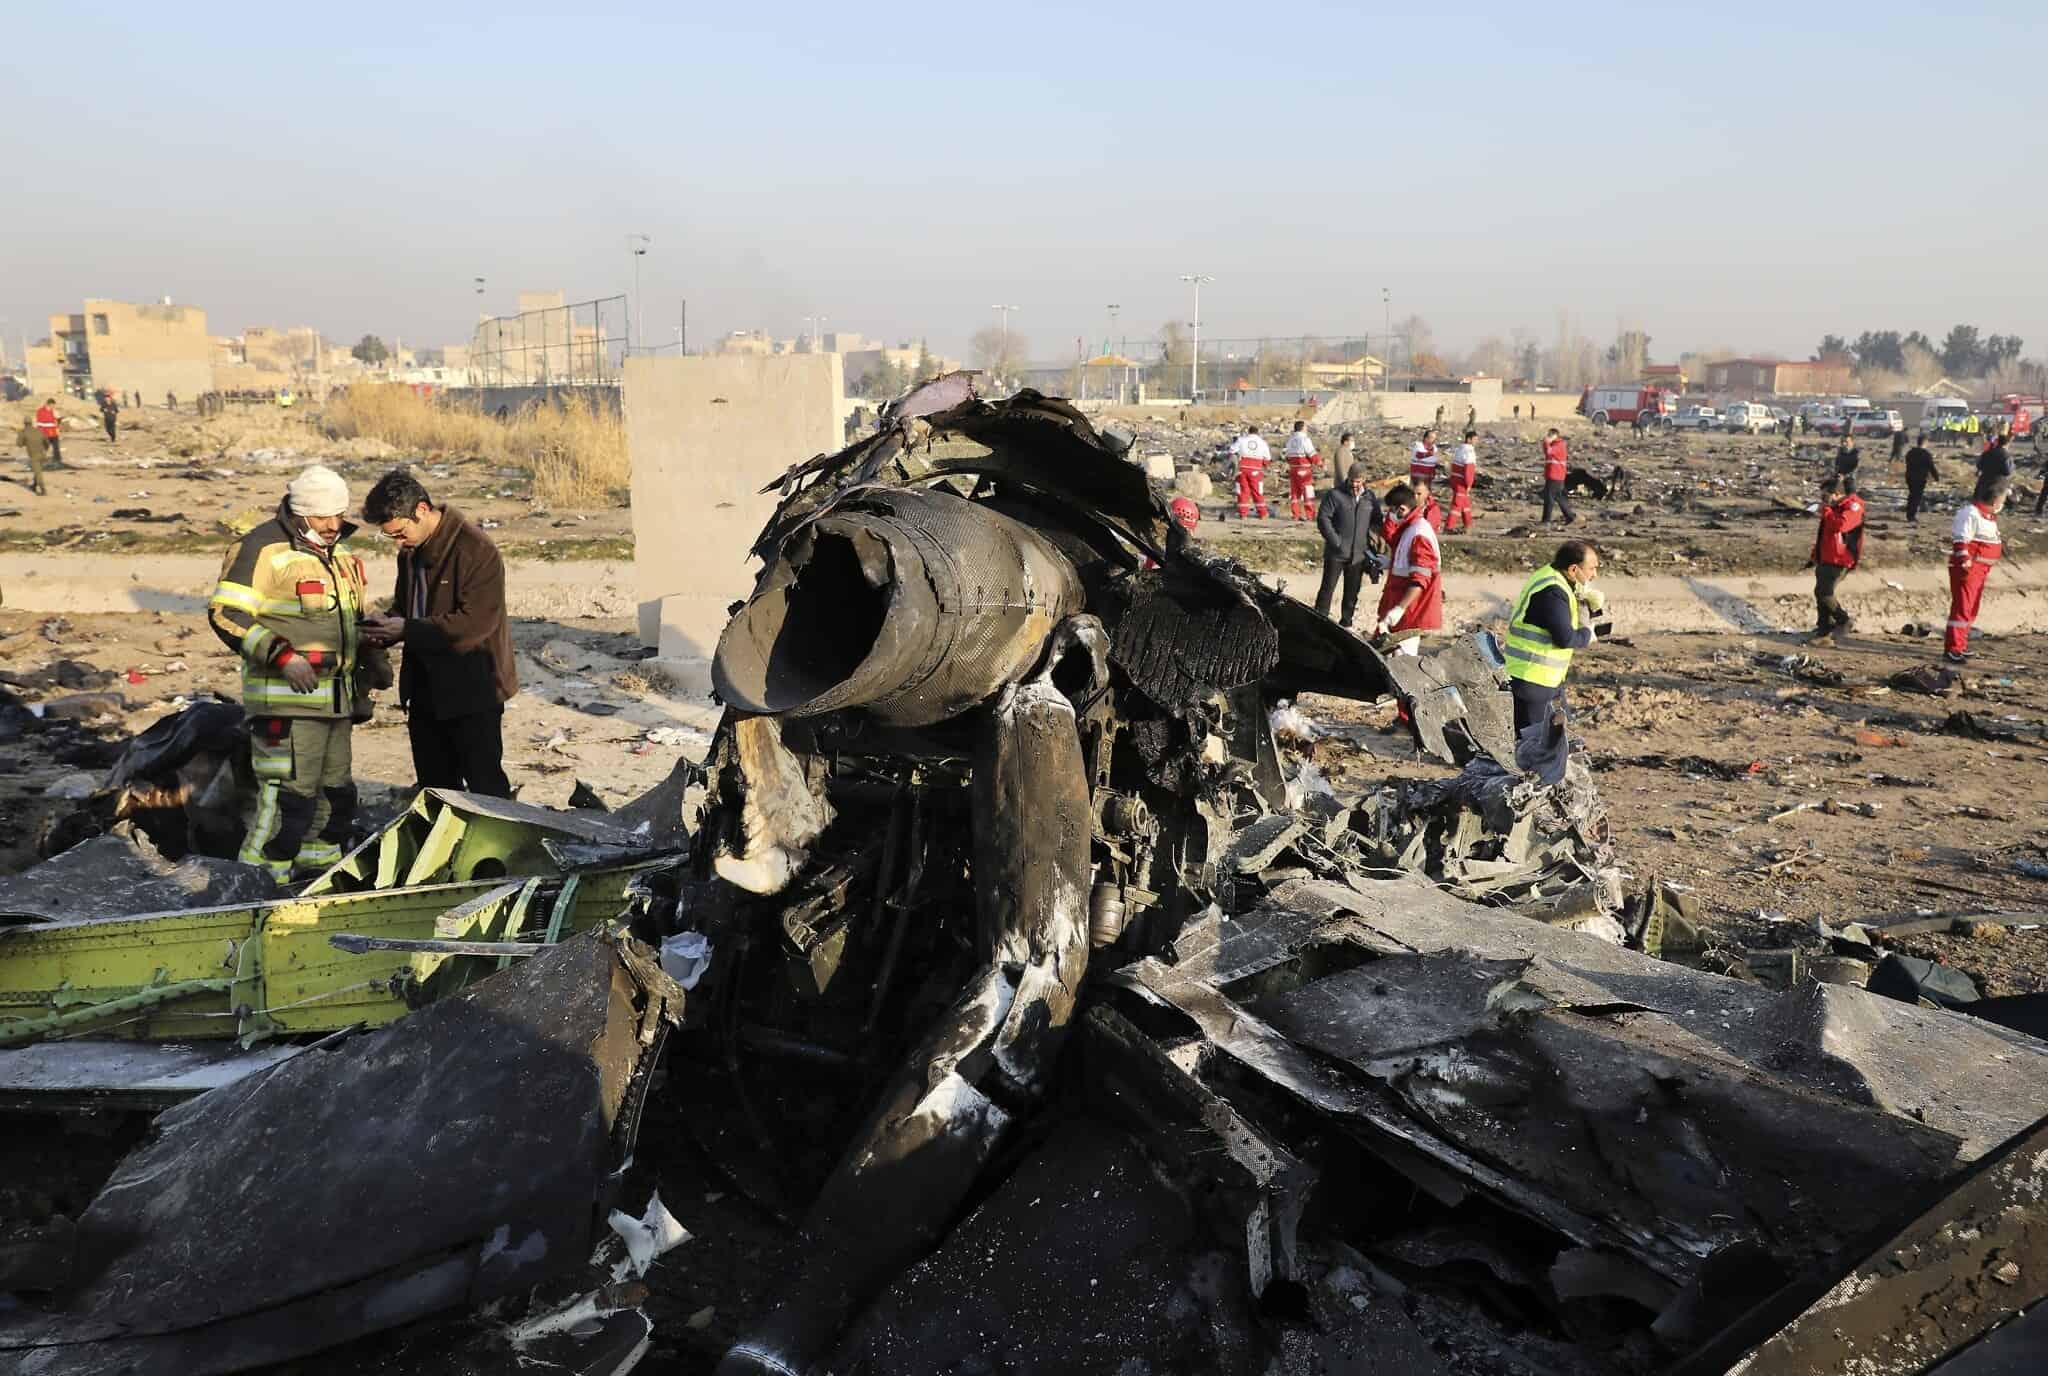 שאריות המטוס האוקראיני שיורט על ידי איראן, בסמוך לטהרן (צילום: AP Photo/Ebrahim Noroozi)